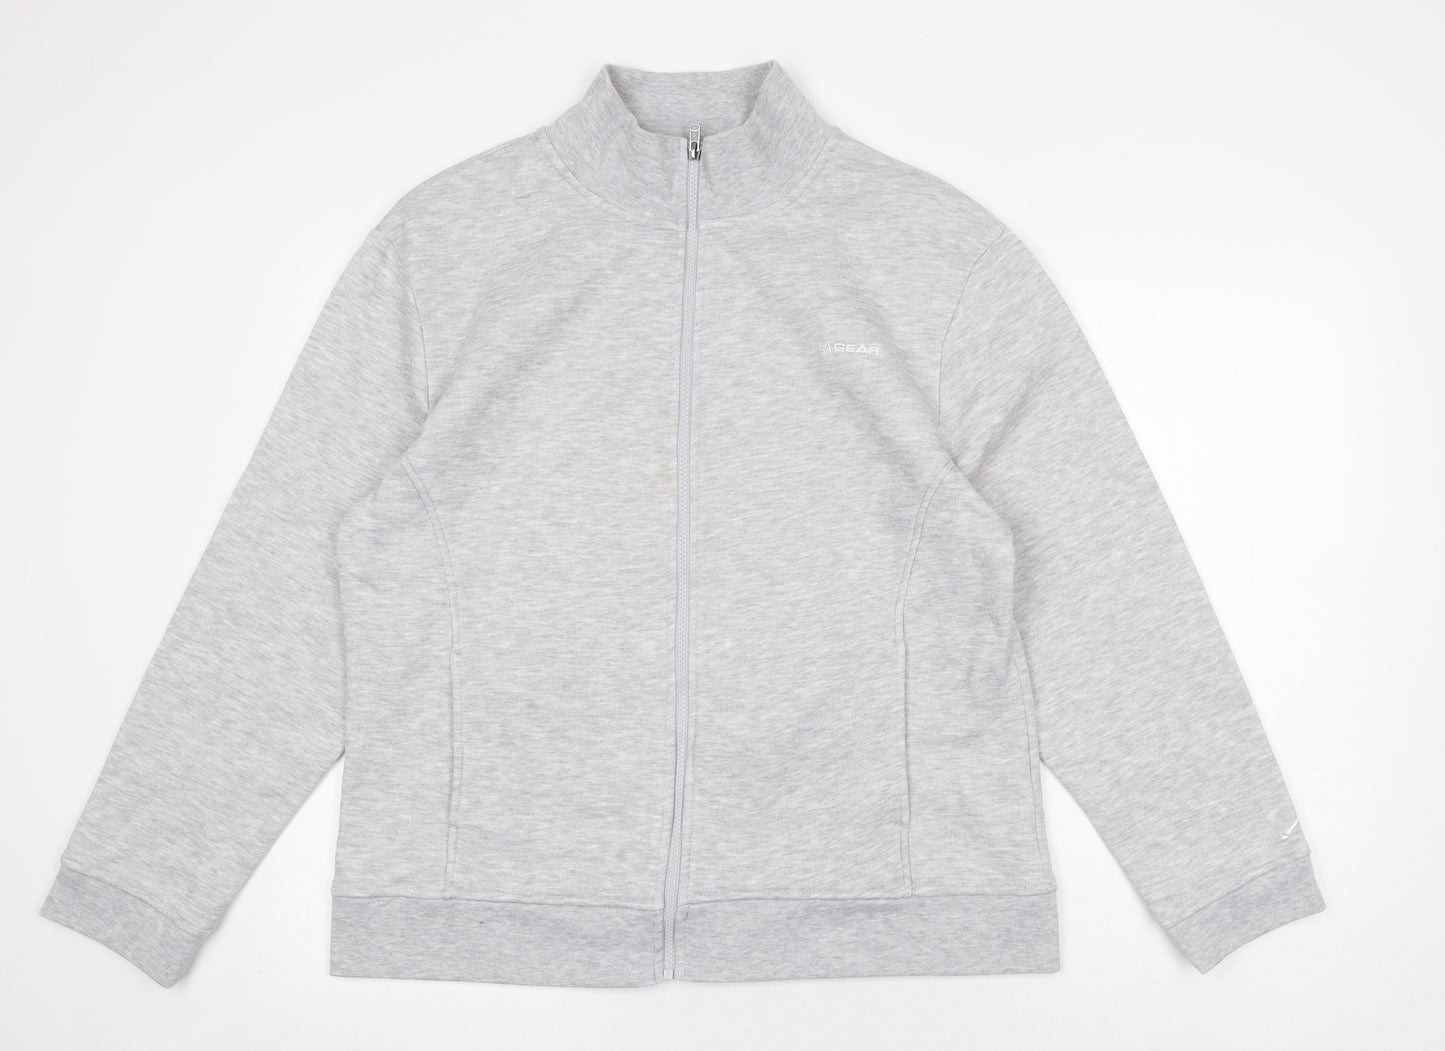 LA Gear Womens Grey Jacket Size 20 Zip